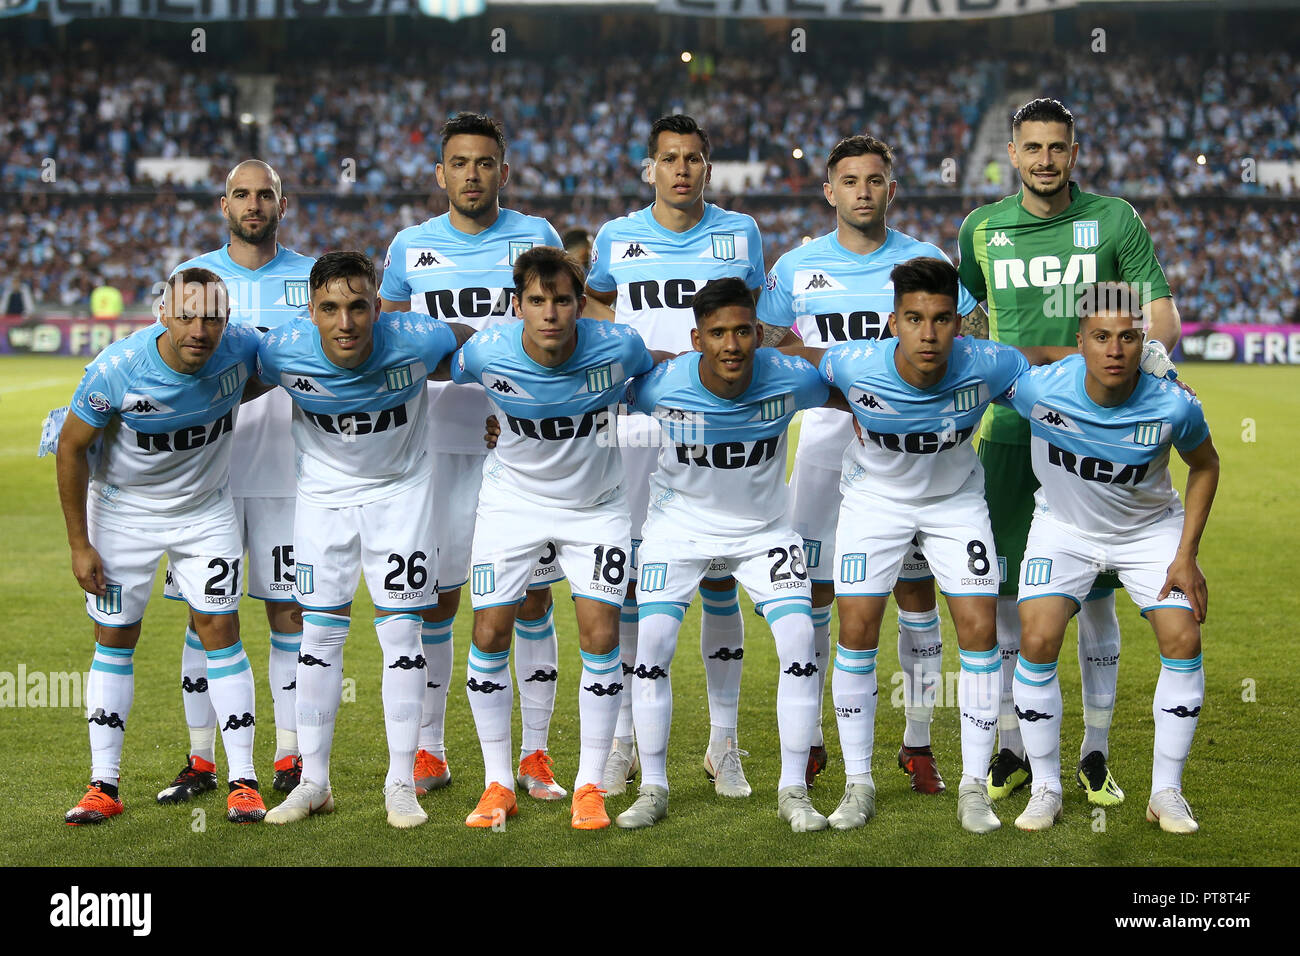 Buenos Aires, Argentina - October 07, 2018: Racing team formation against Boca in the Estadio Juan Domingo Peron in Buenos Aires, Argentina Stock Photo